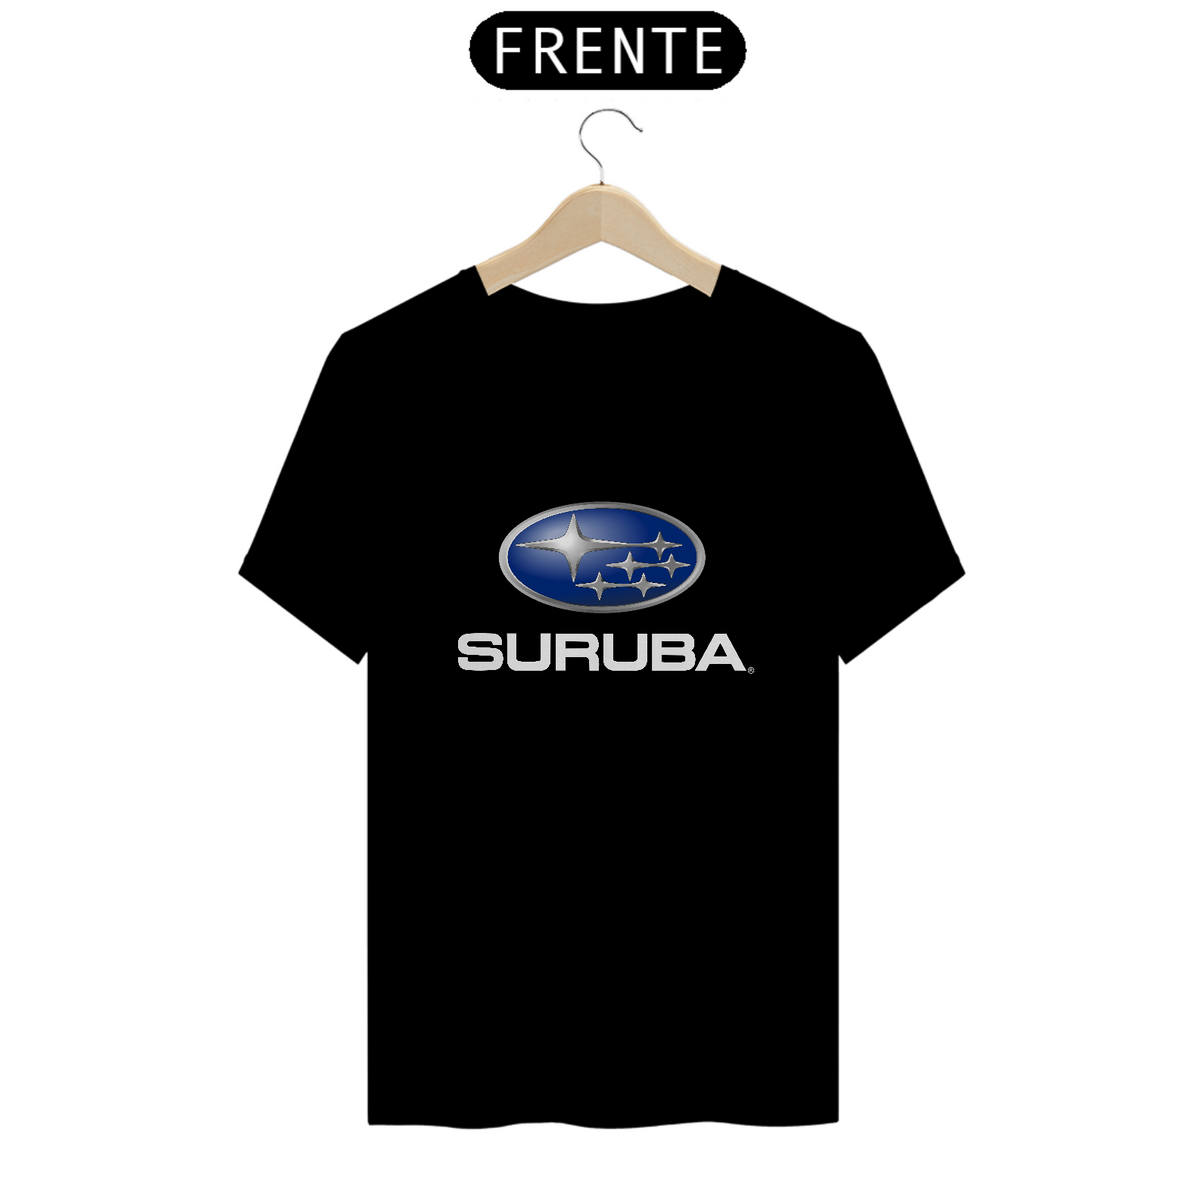 Nome do produto: Camisetas Engraçadas - Sátira Subaru - Suruba